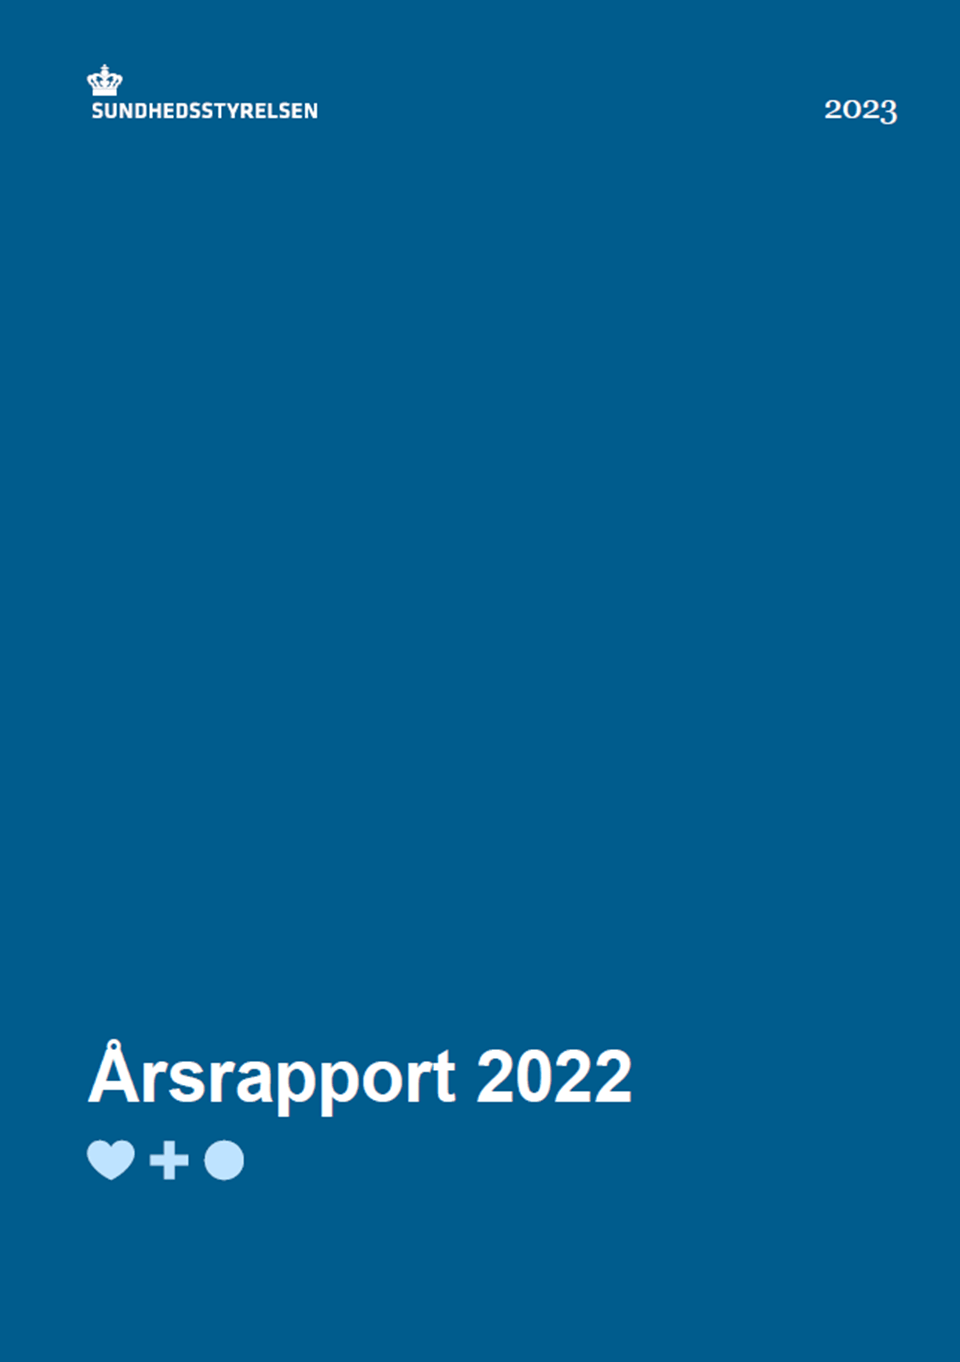 Sundhedsstyrelsens årsrapport 2022